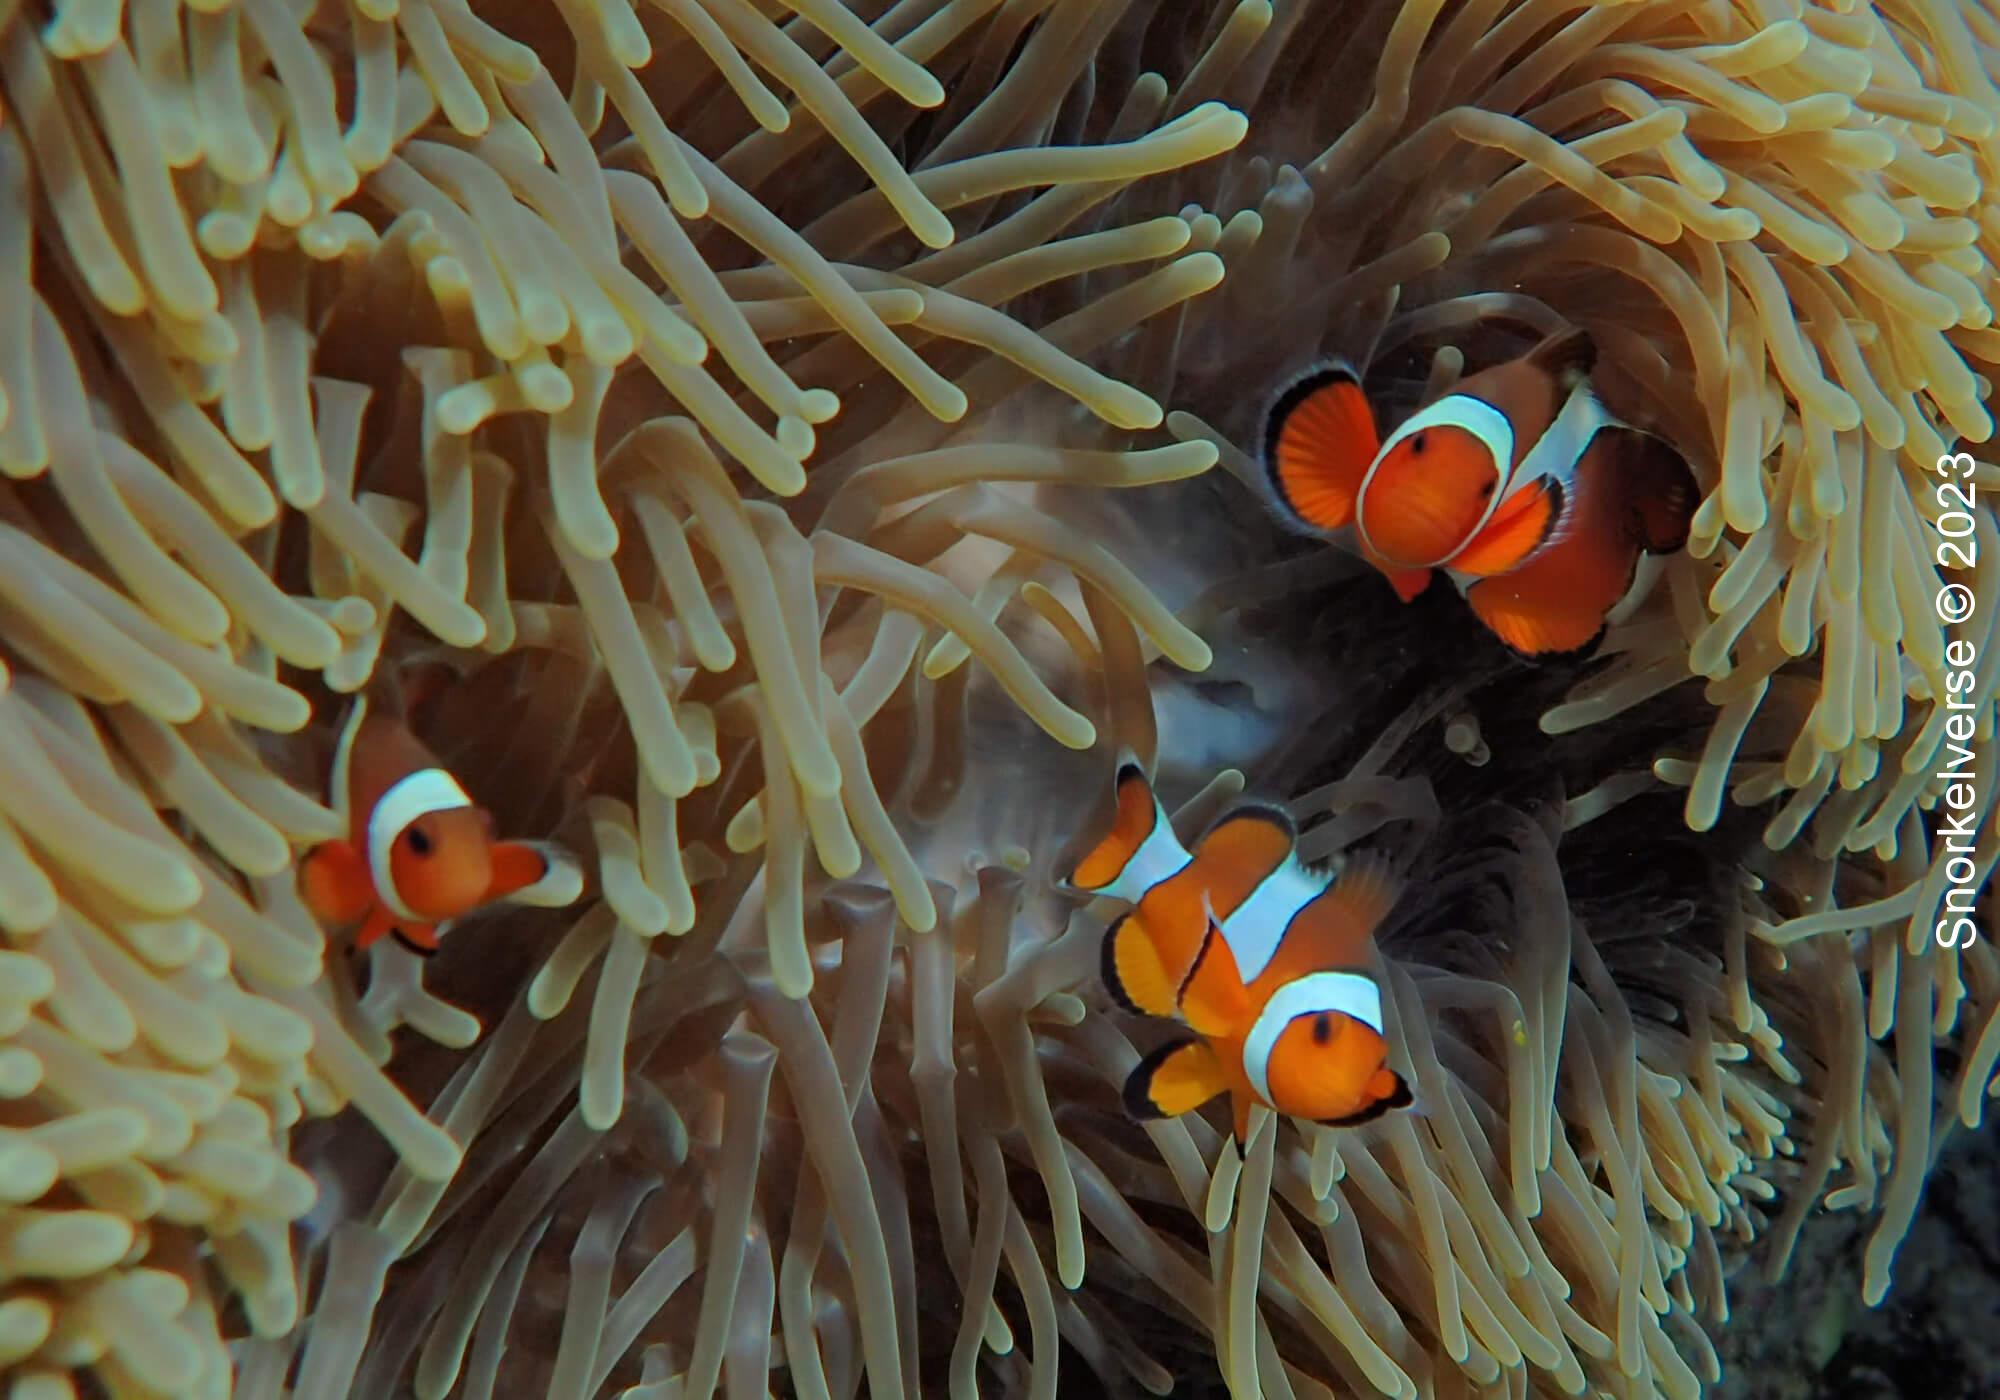 A family of Oscellaris Clownfish